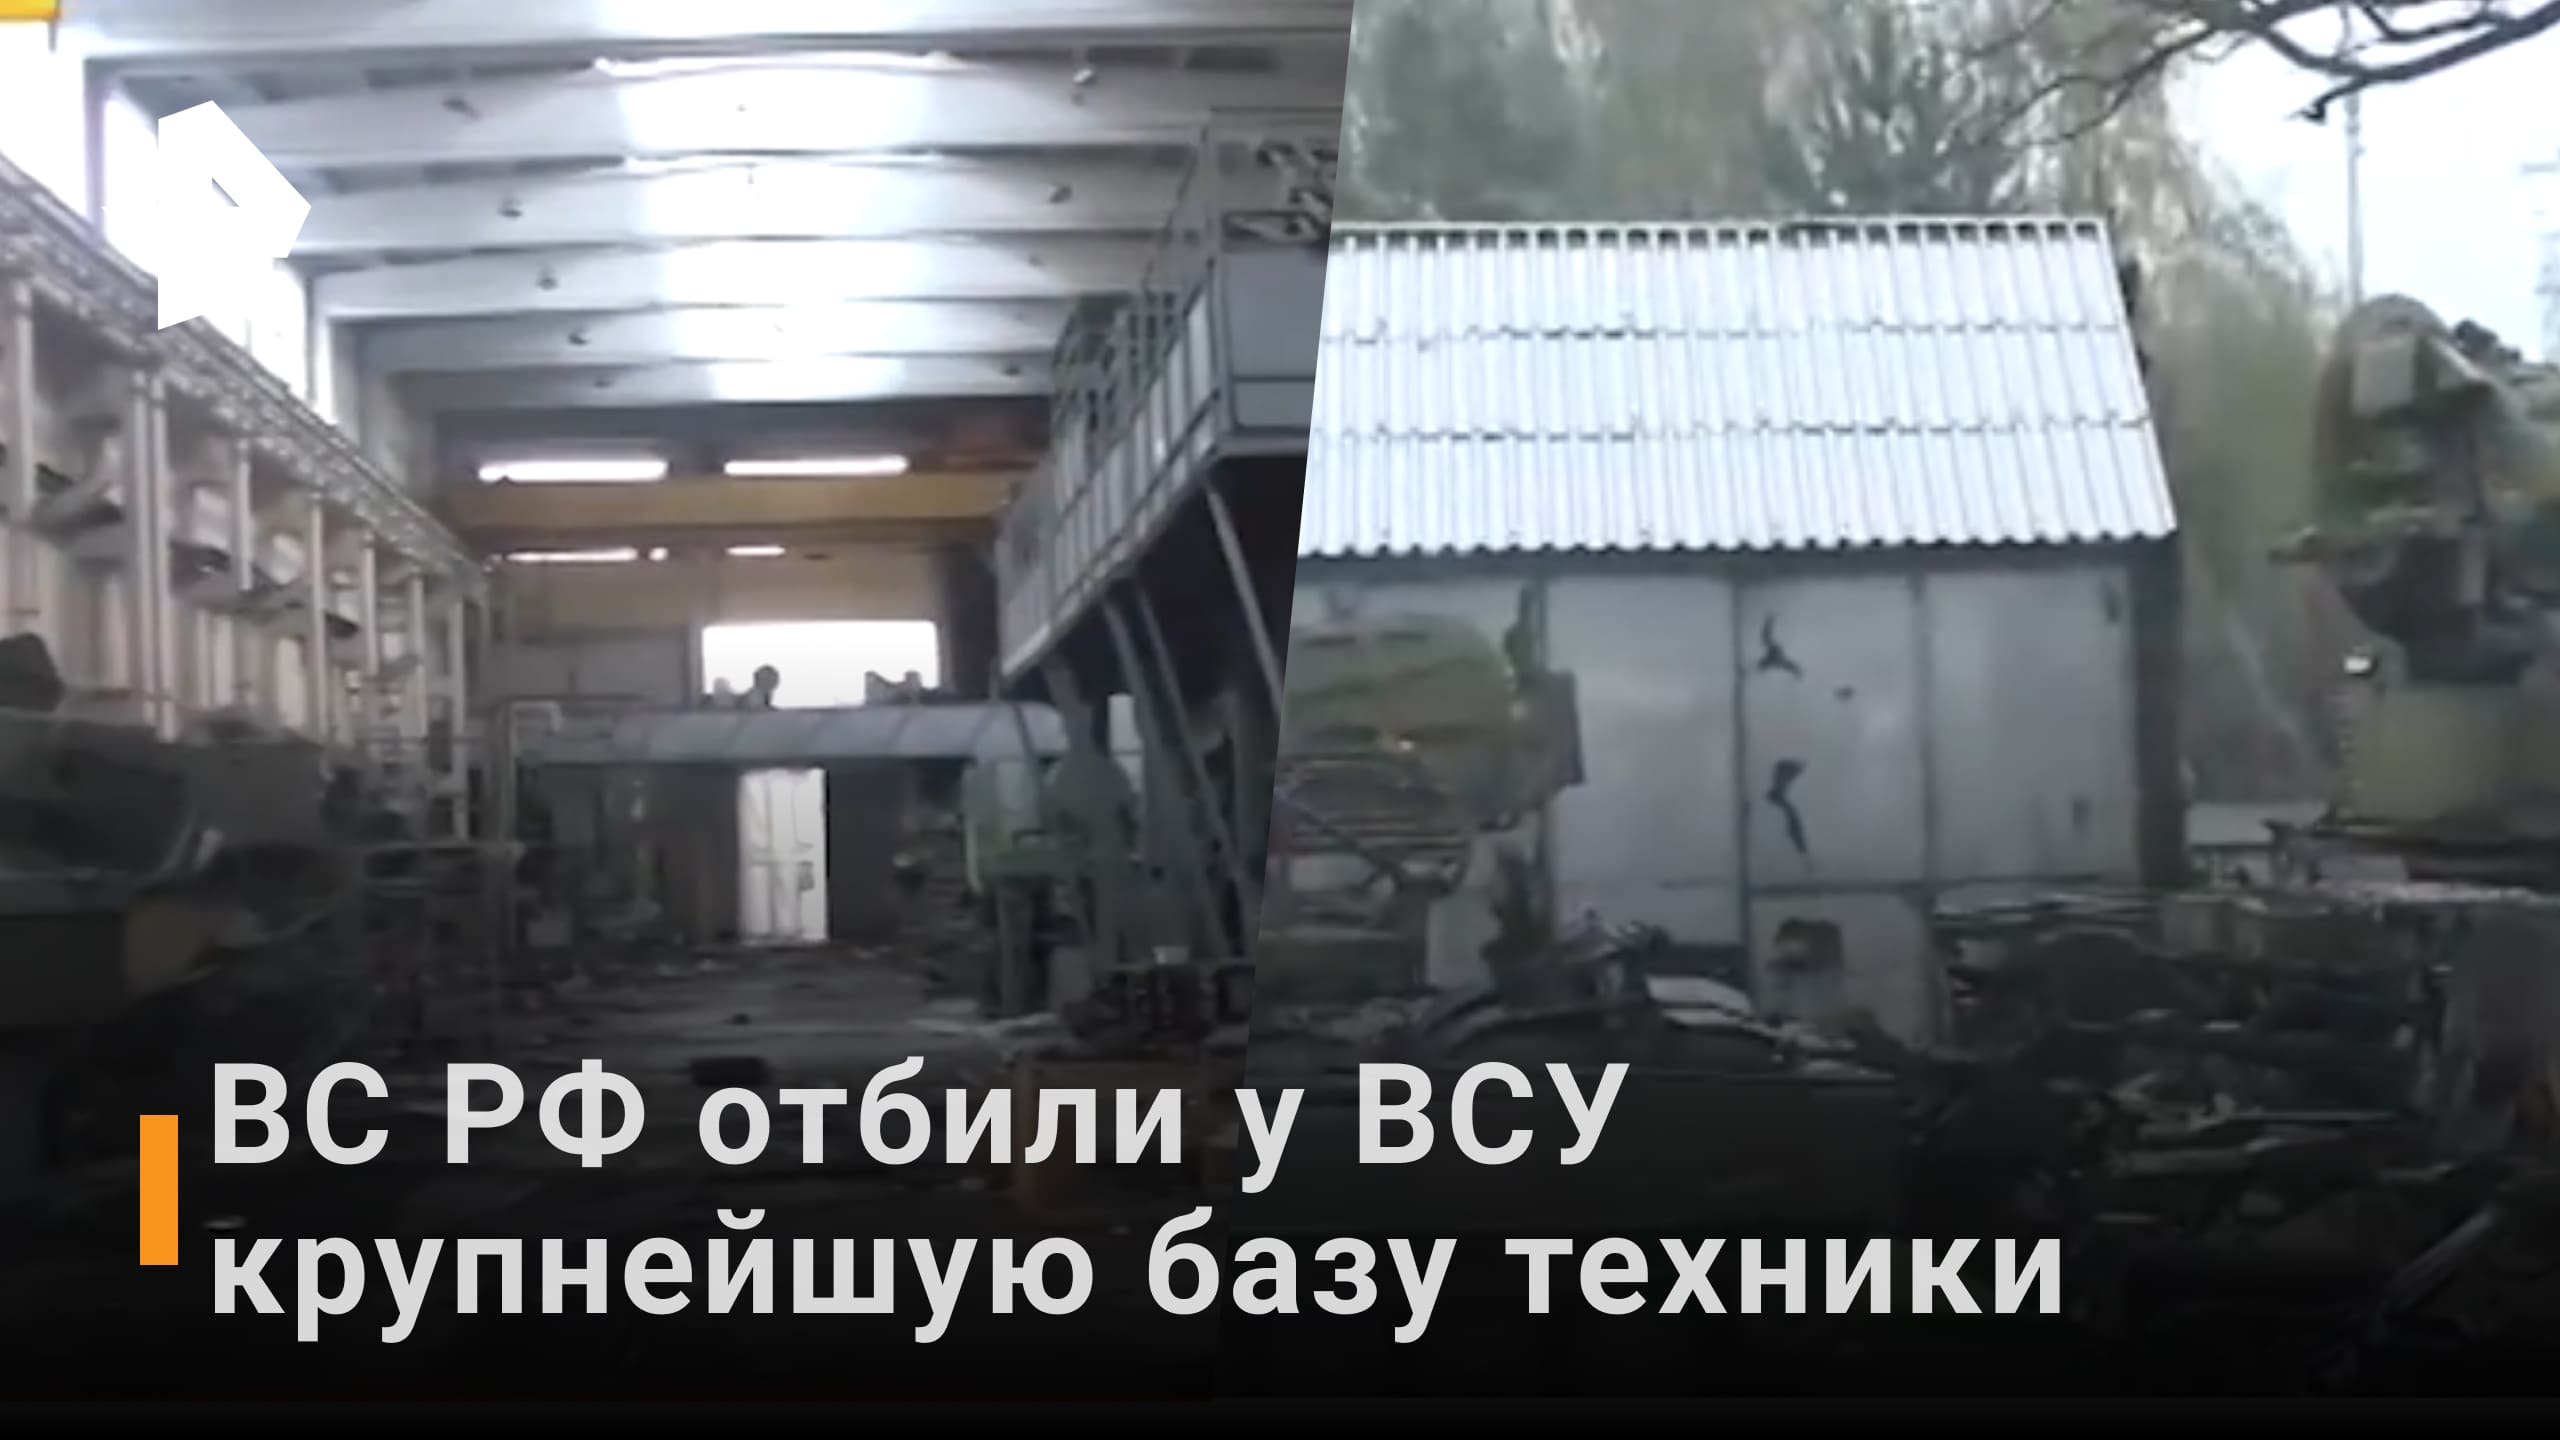 Российские военные захватили базу хранения техники ВСУ / РЕН Новости